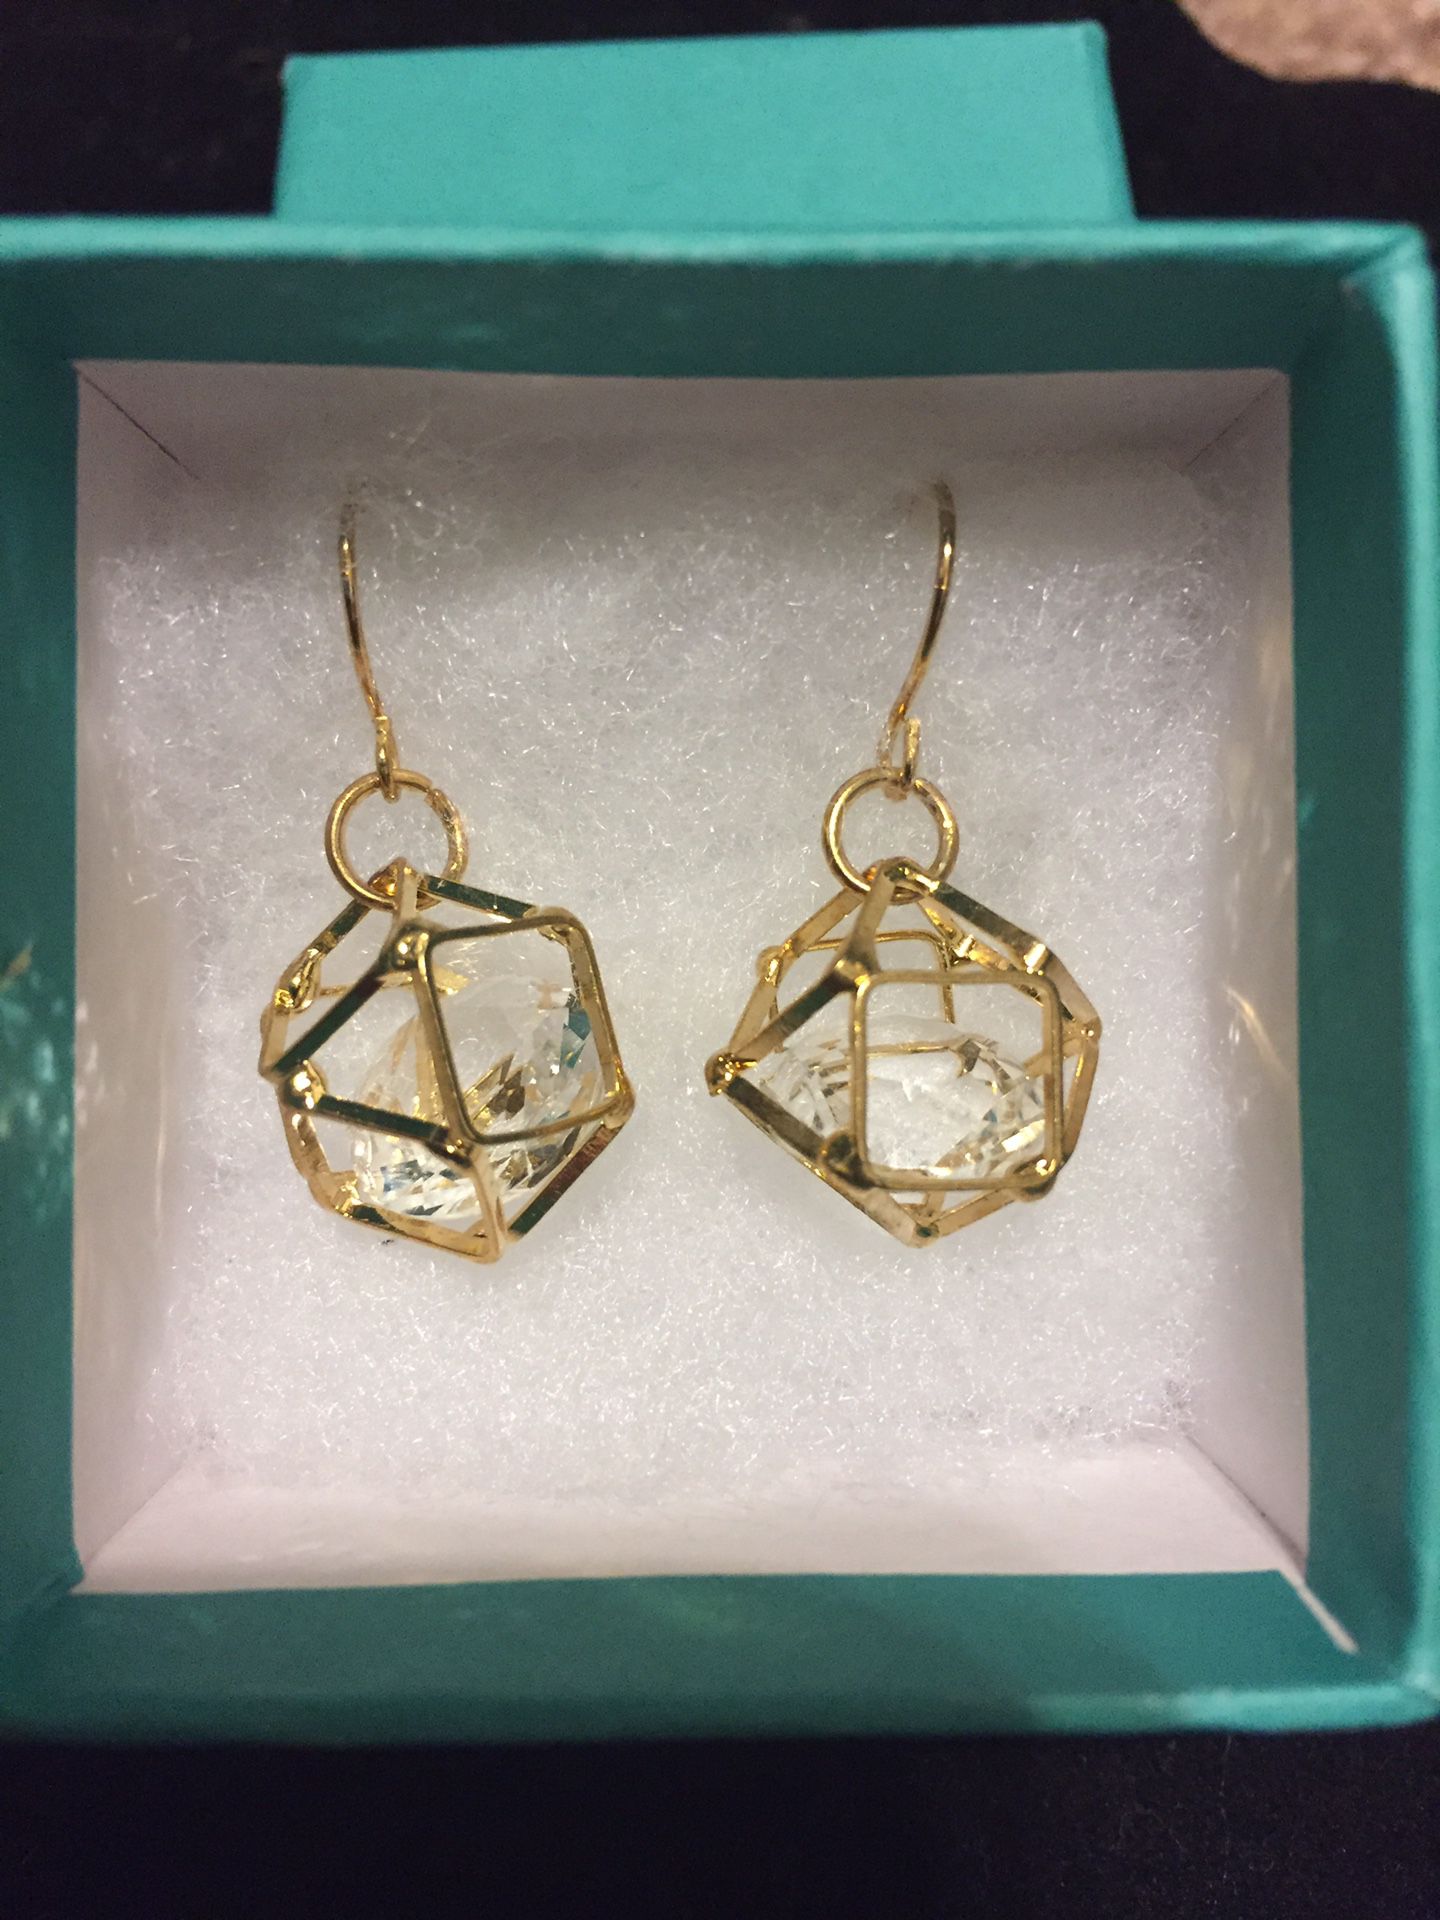 Caged gem earrings